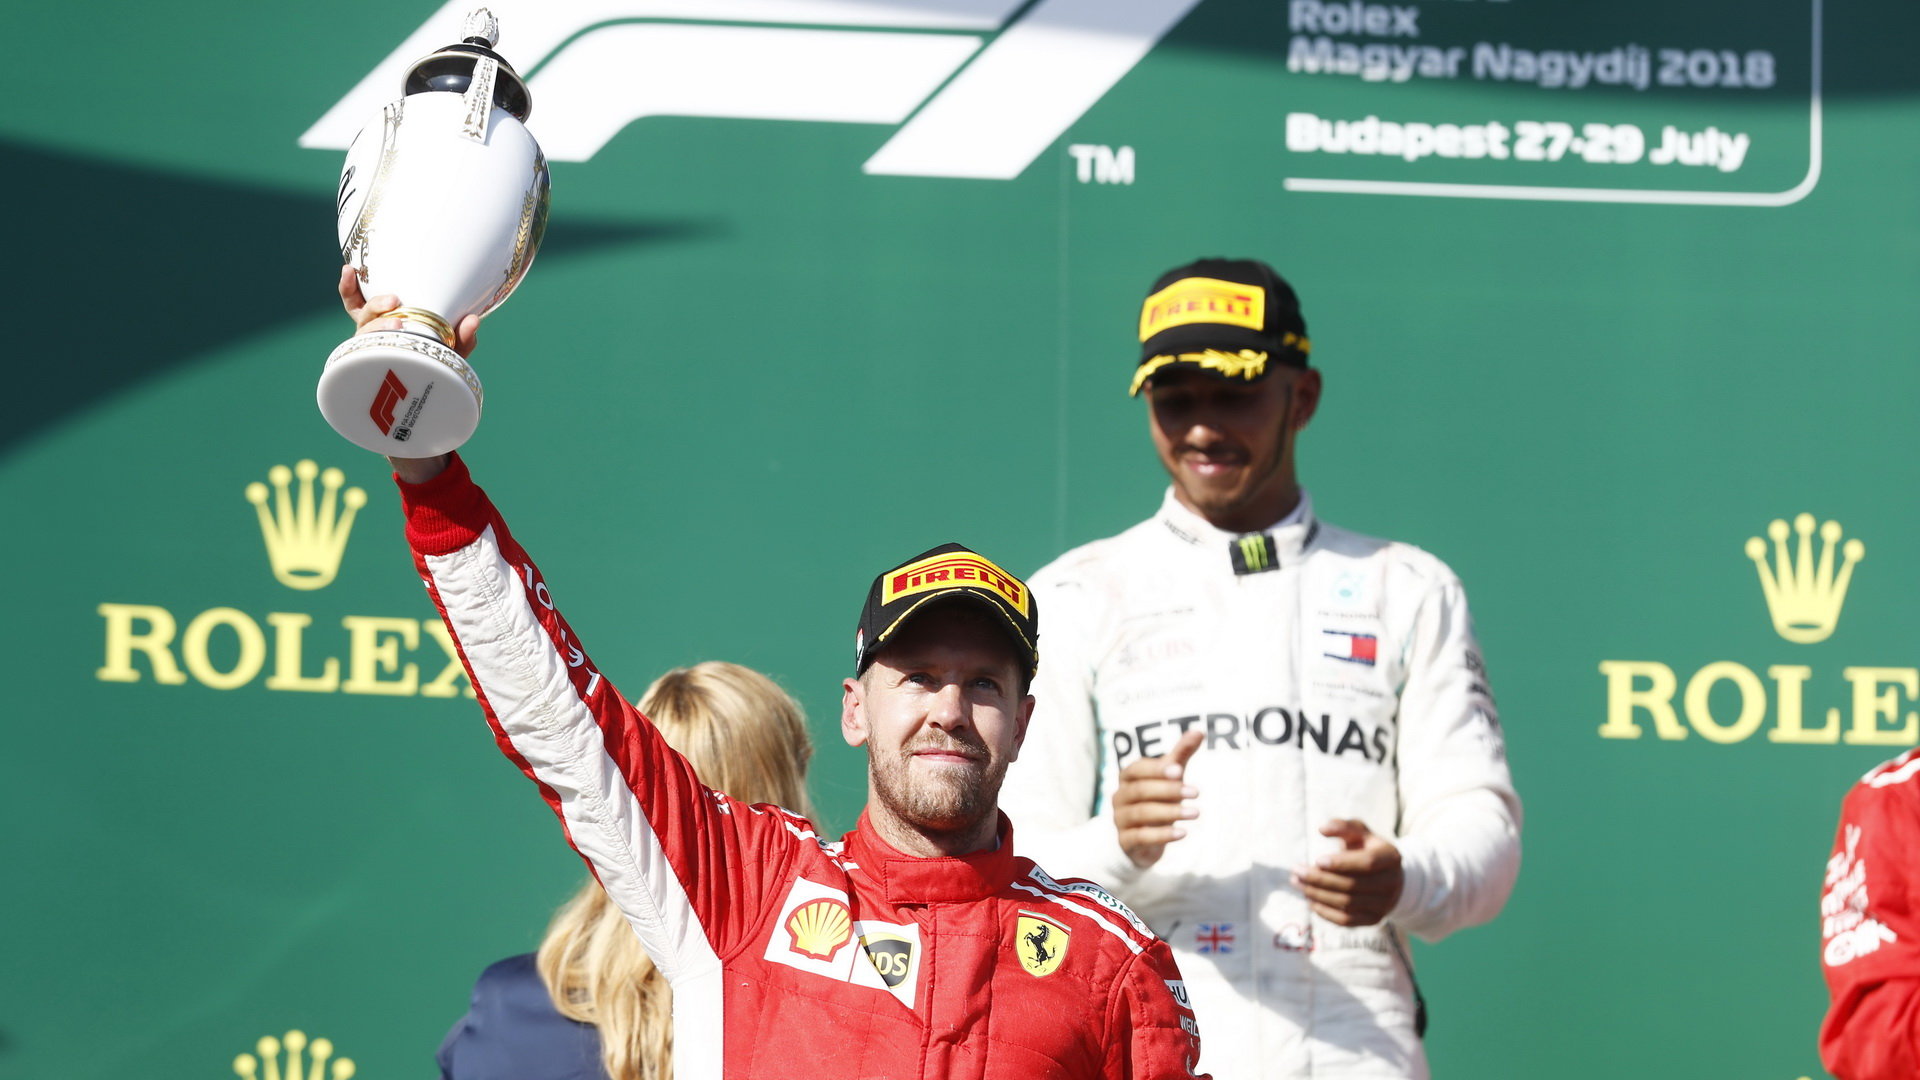 Sebastian Vettel se svou trofejí na pódiu po závodě v Maďarsku